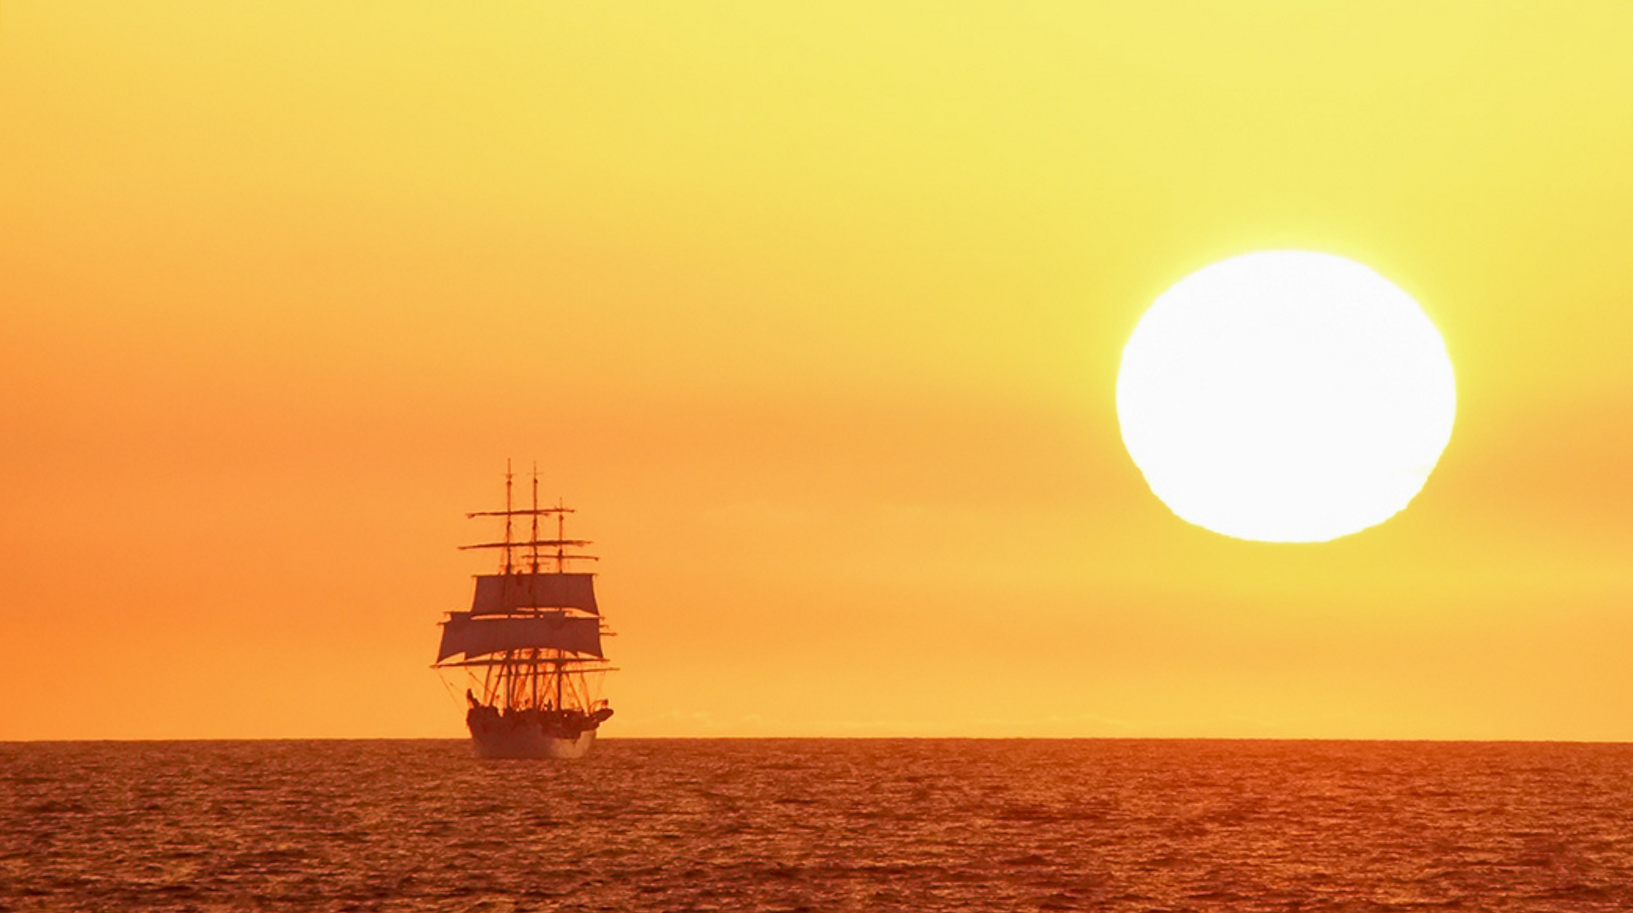 Sailing ship in Atlantic ocean, Sunset, Tall ships races. Photo by Elena Mashkova